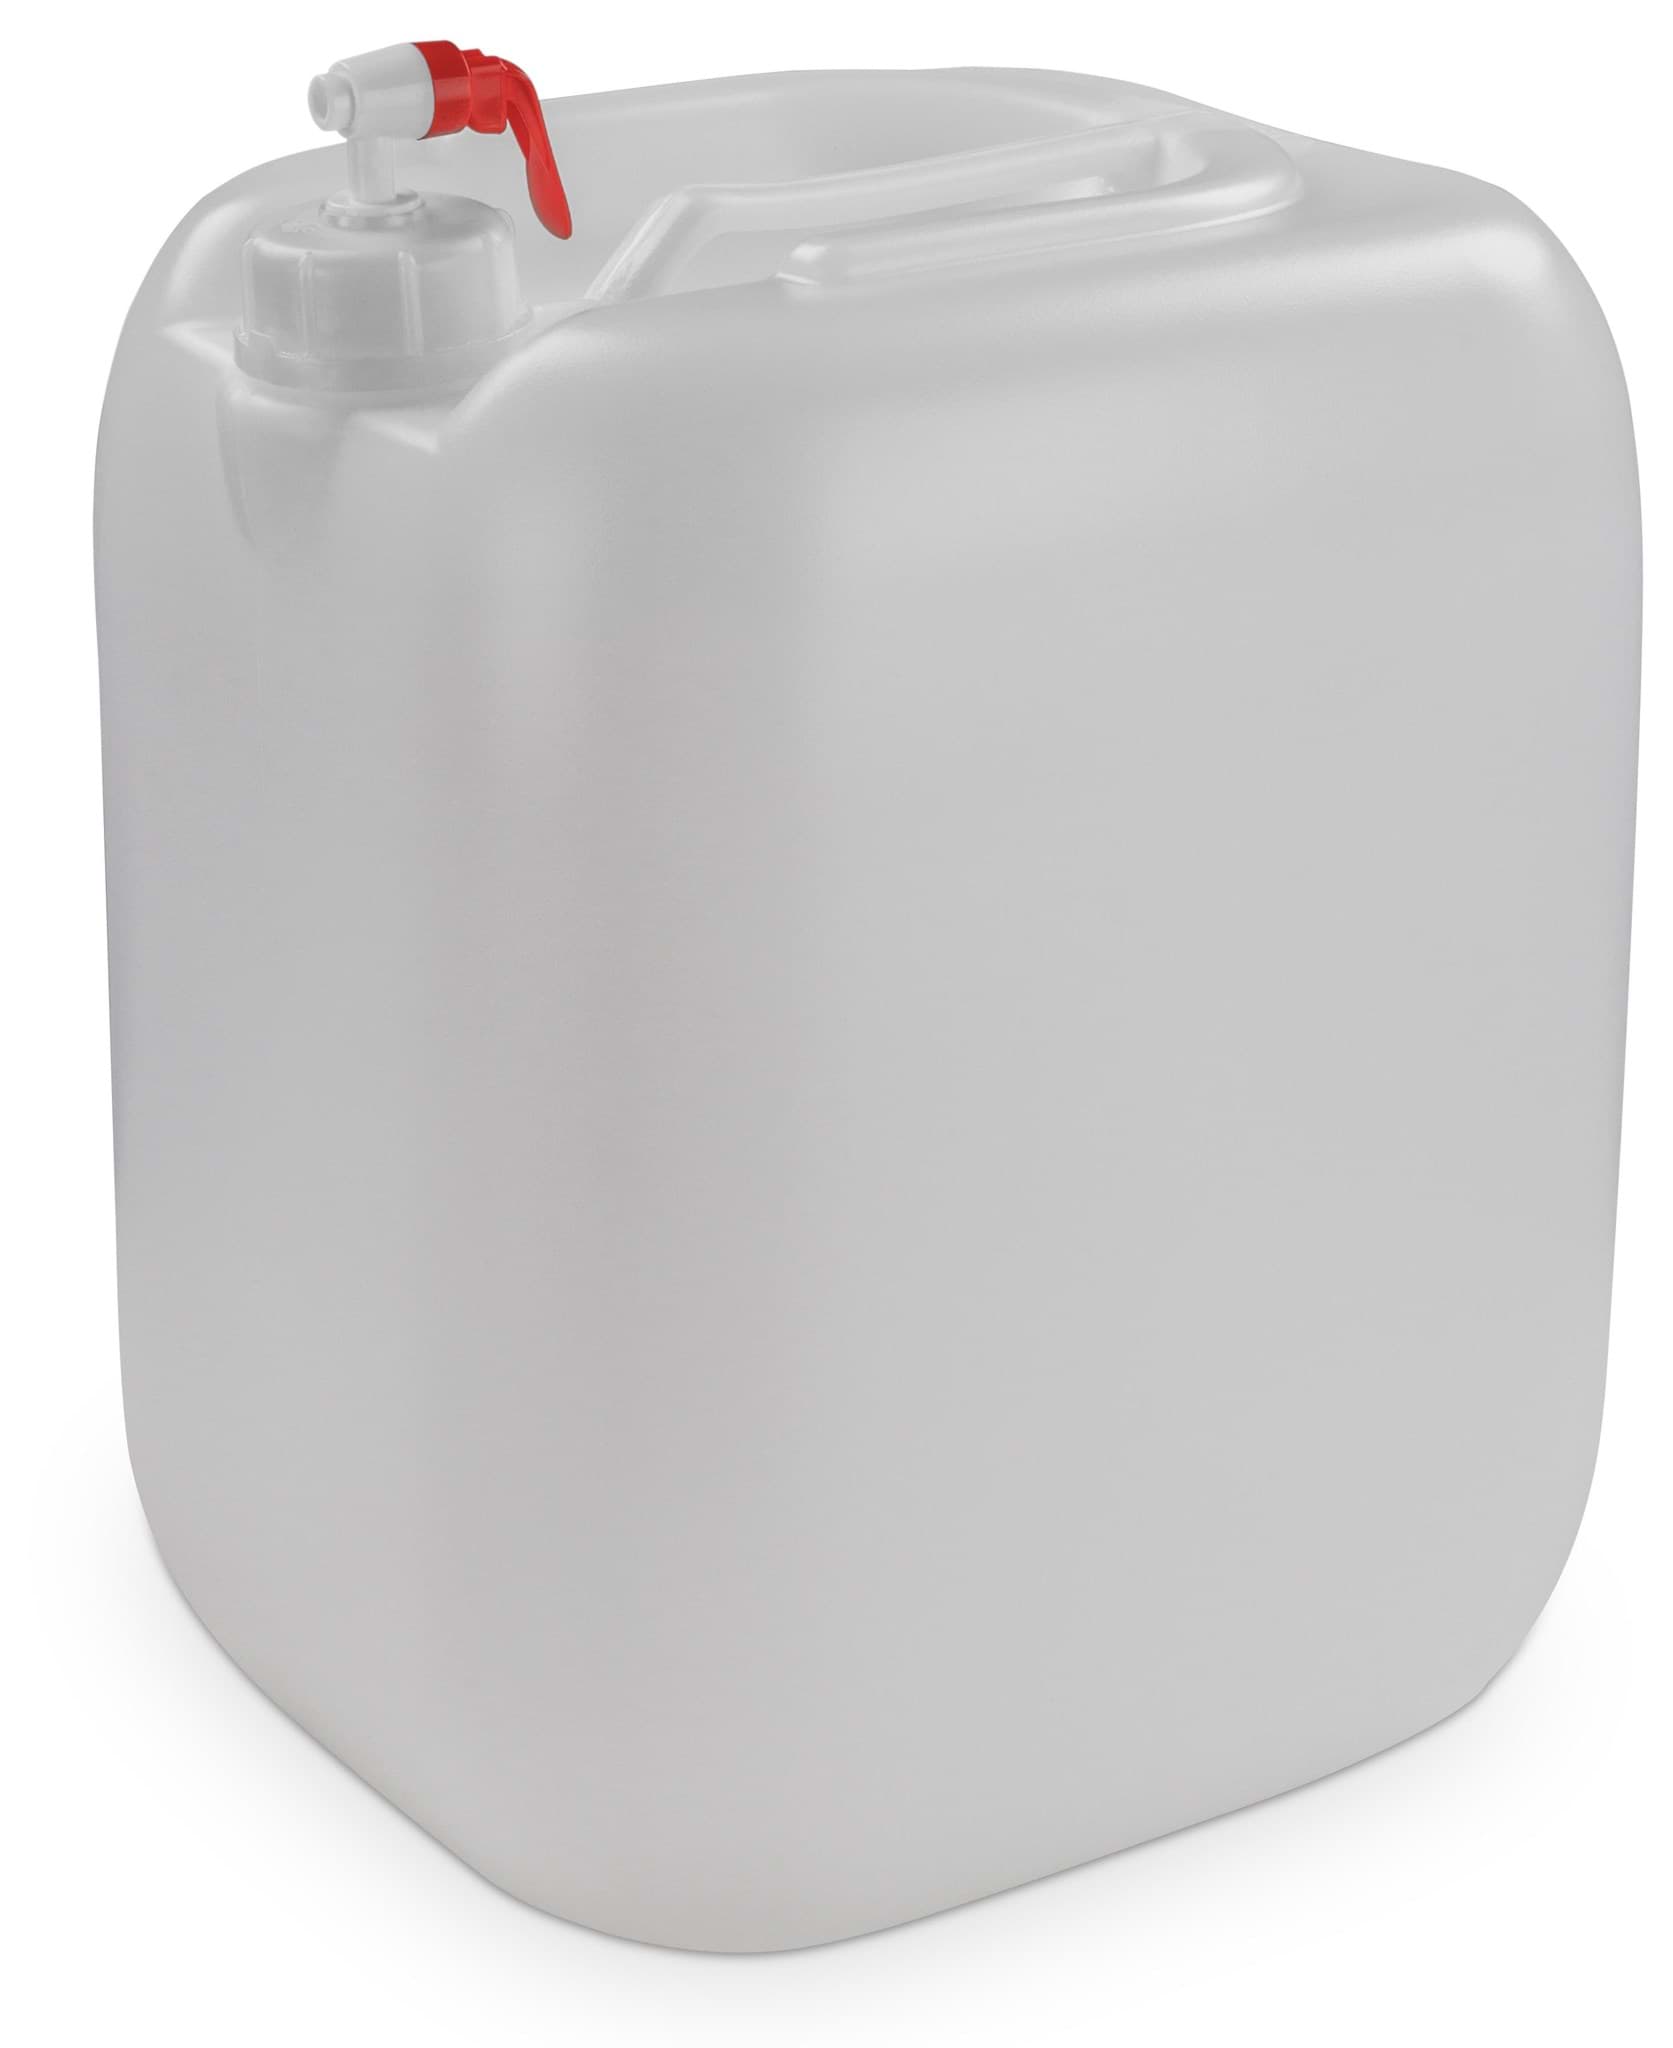 Bild von Wasserkanister Carry 30 Liter Transparent